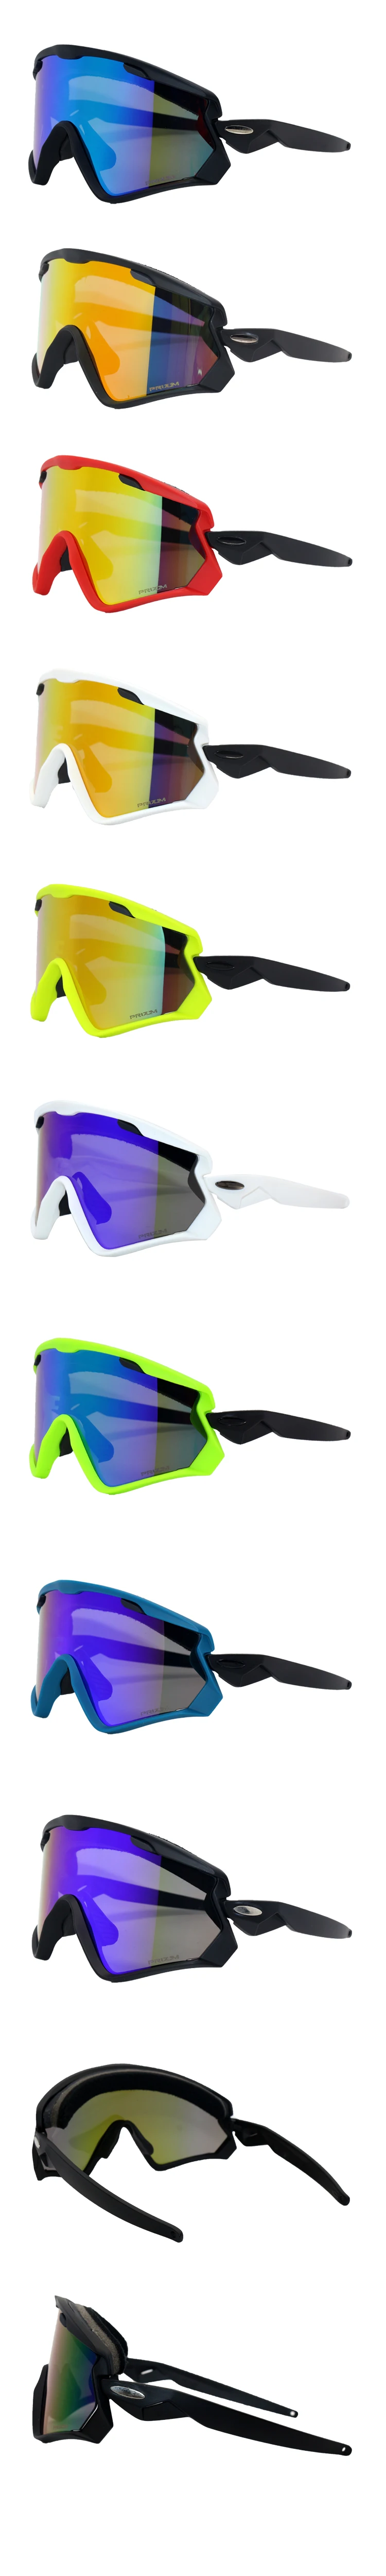 3 линзы наружные велосипедные очки спортивные солнцезащитные очки для велоезды фирменный дизайн мужские и женские велосипедные очки